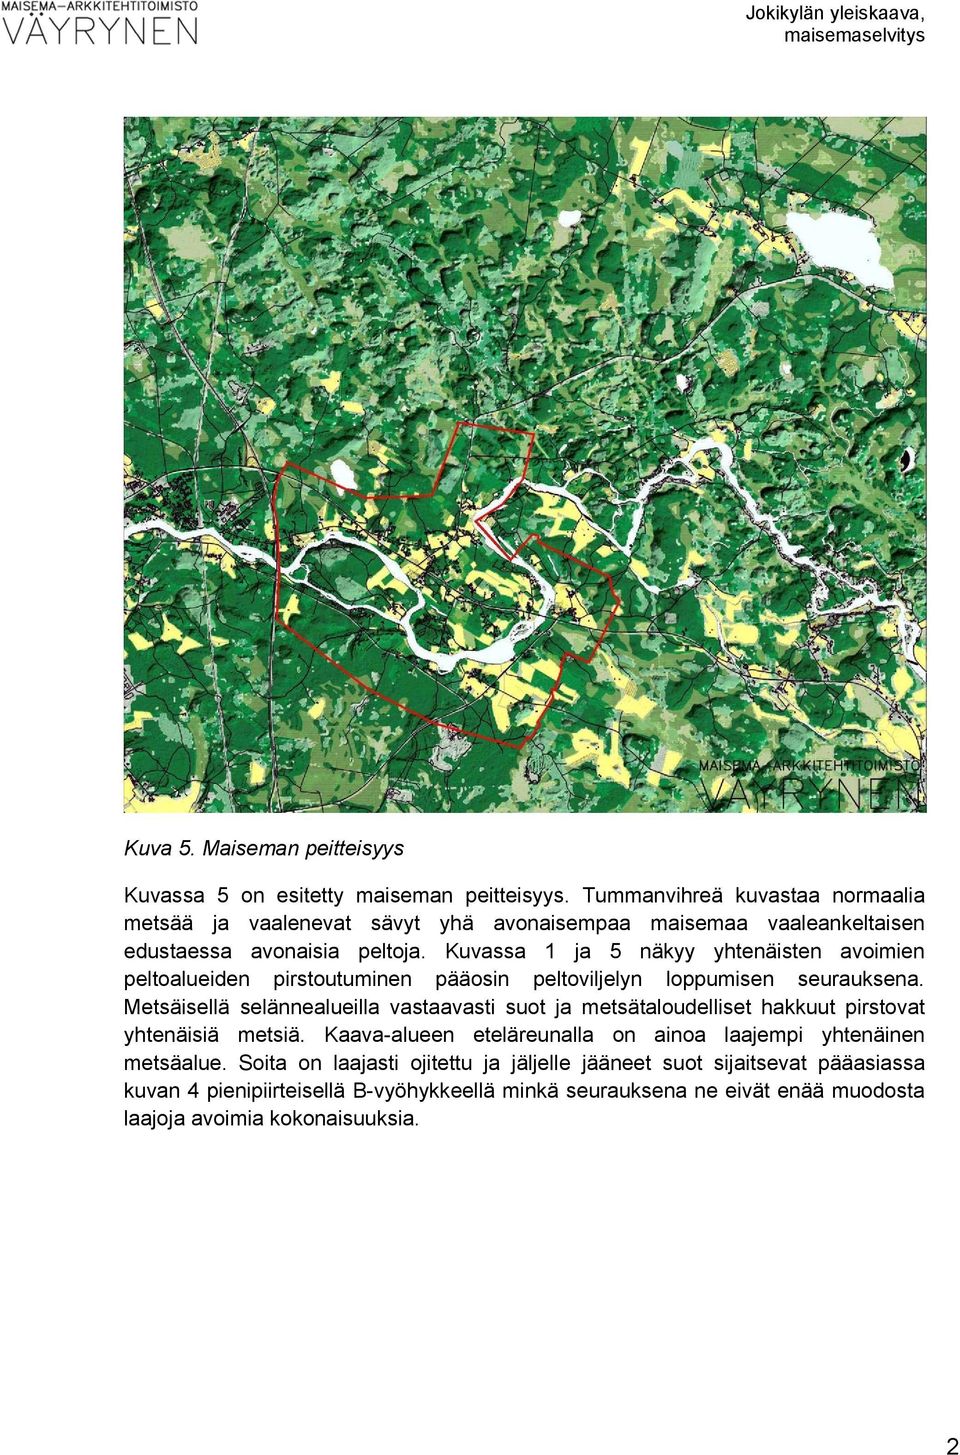 Kuvassa 1 ja 5 näkyy yhtenäisten avoimien peltoalueiden pirstoutuminen pääosin peltoviljelyn loppumisen seurauksena.